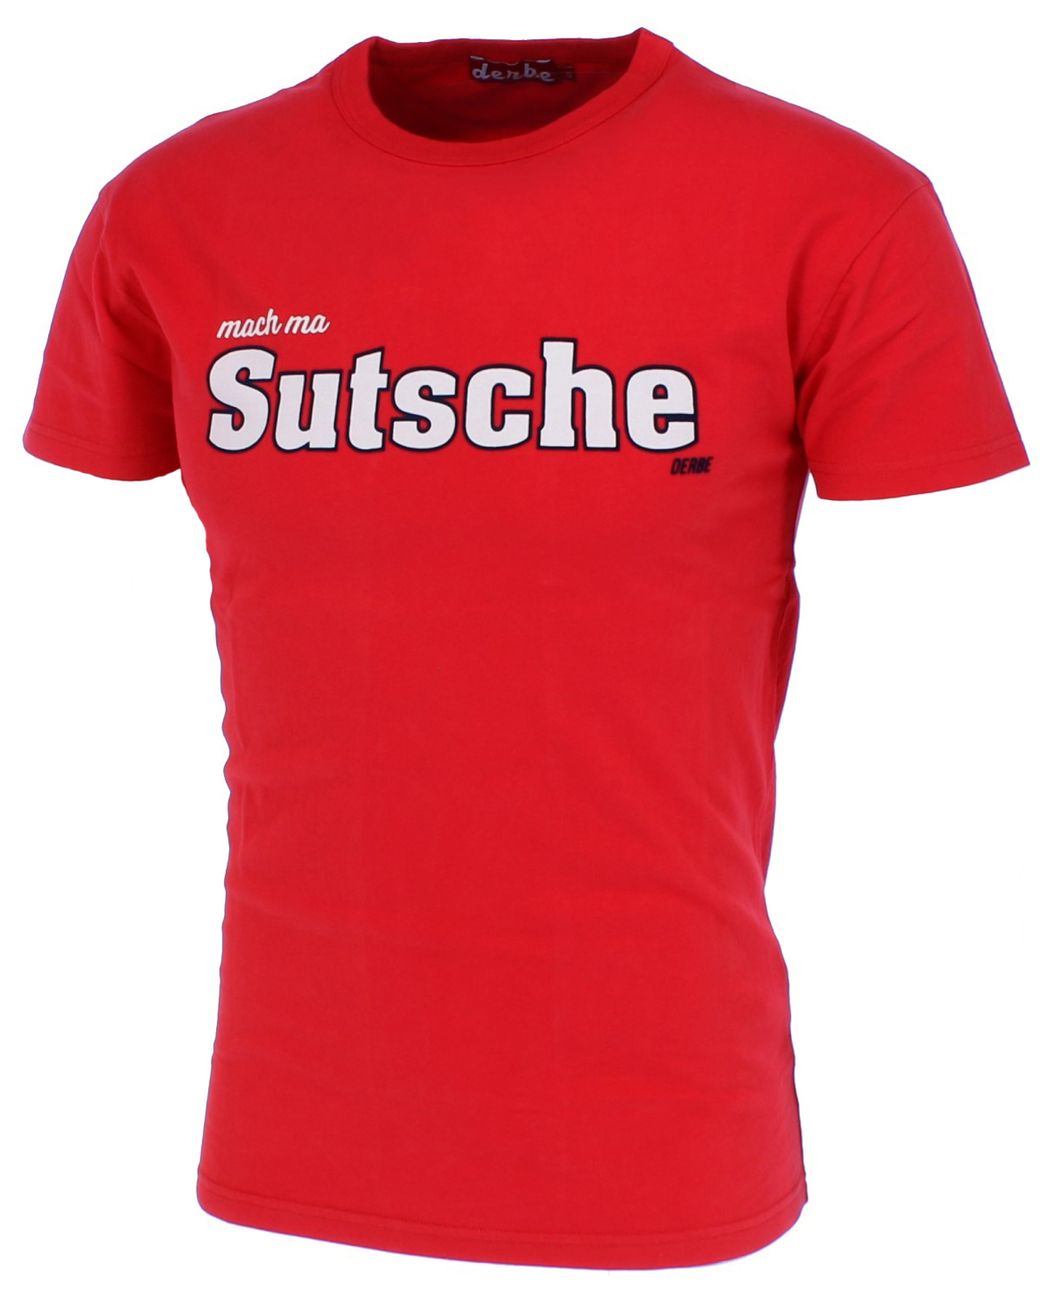 DERBE HAMBURG SUTSCHE BOYS Herren T-Shirt Bio-Baumwolle - Derbe Hamburg - SAGATOO - 4251634713750